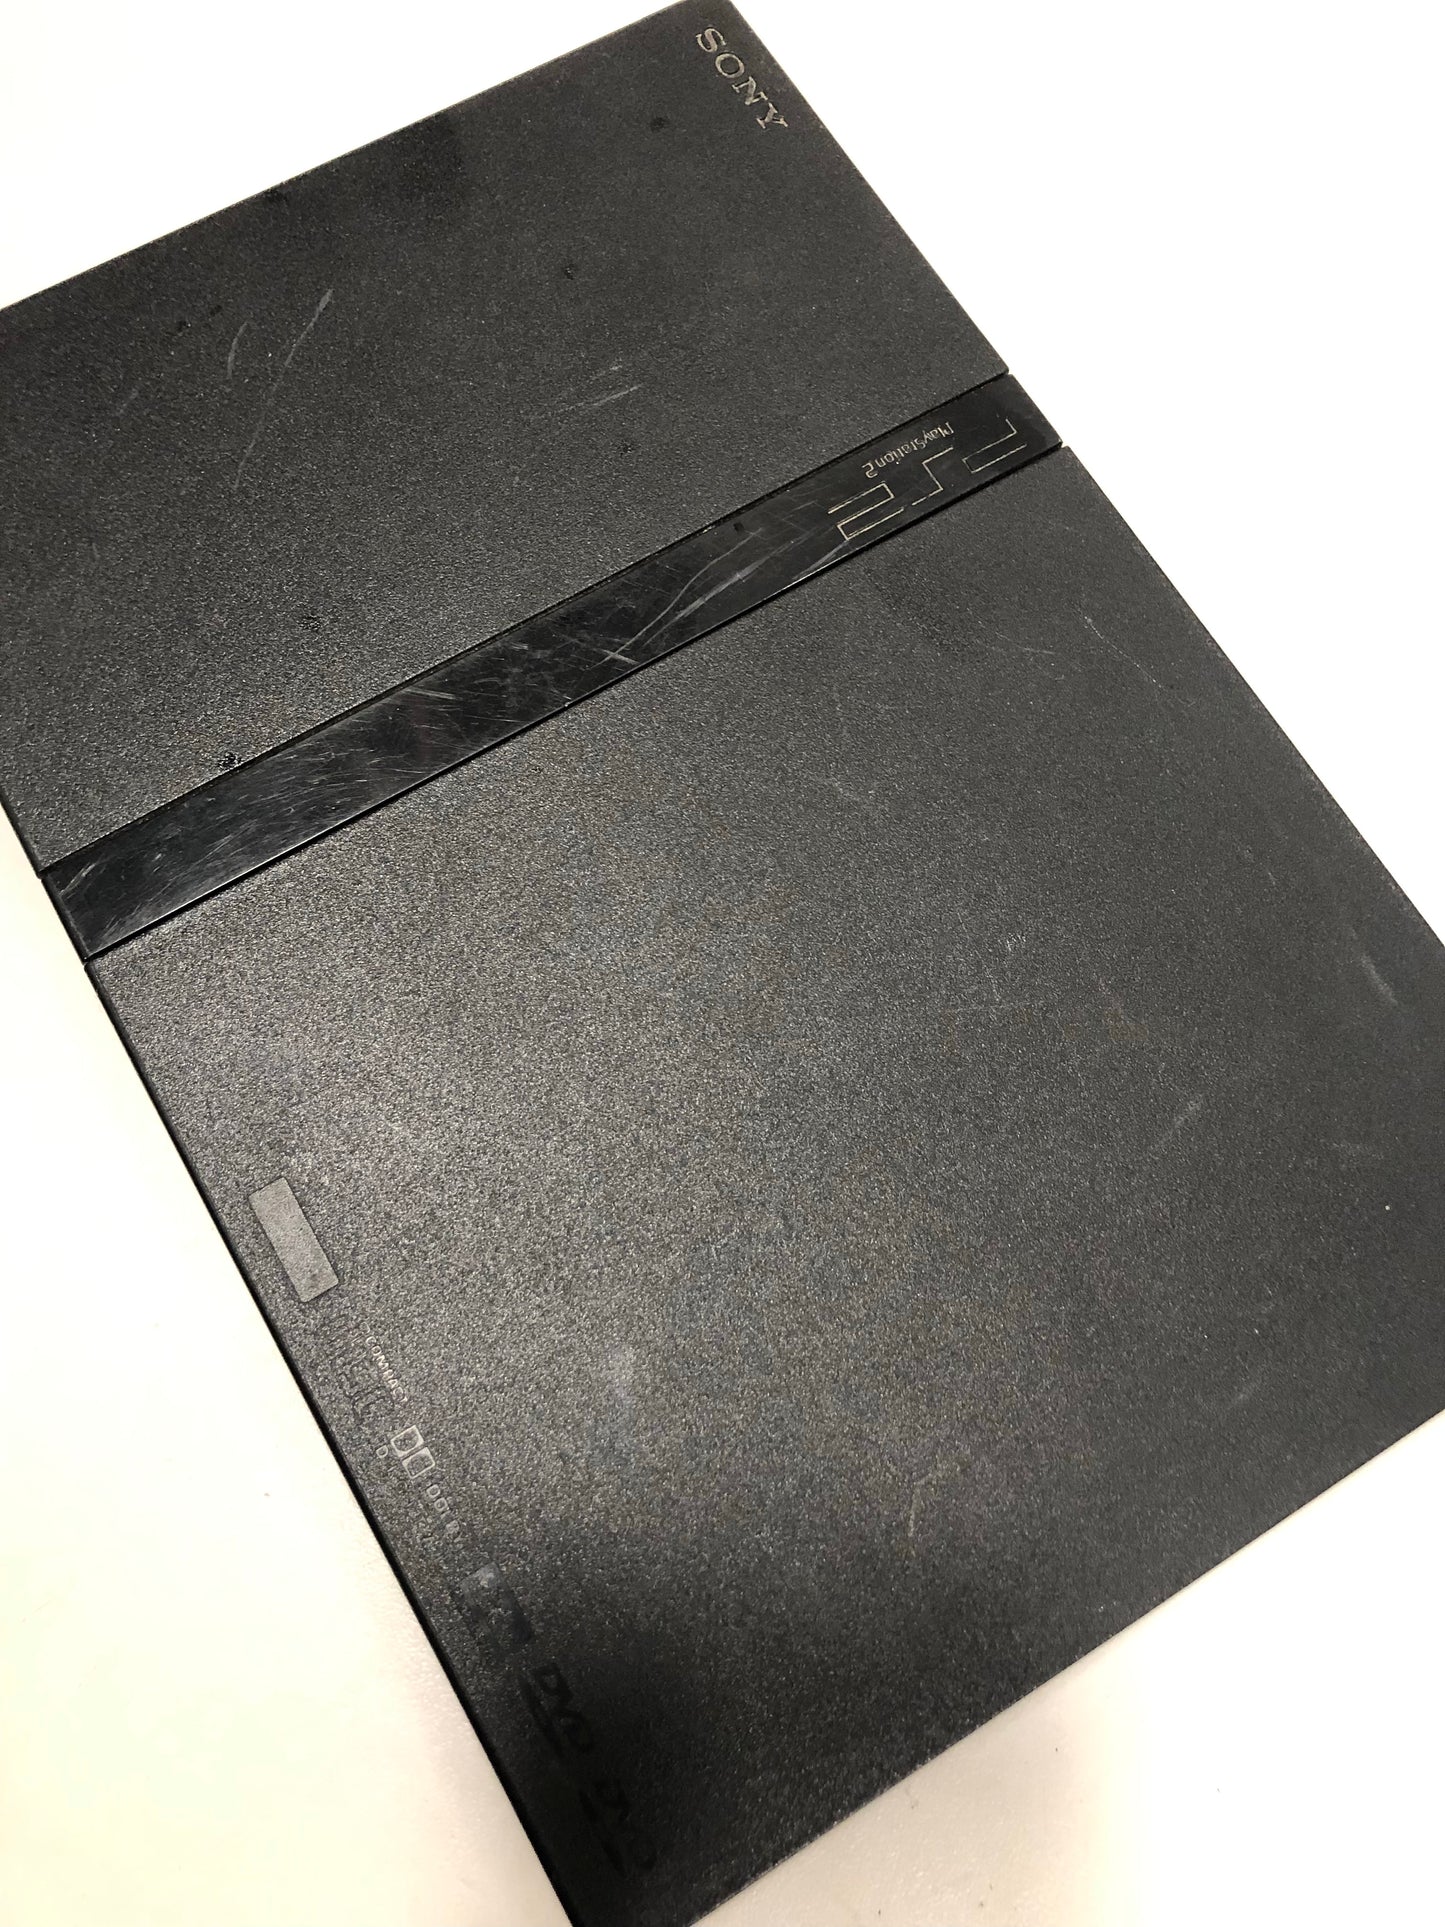 Sony PS2 slim + 2 manettes + 3 jeux + carte mémoire